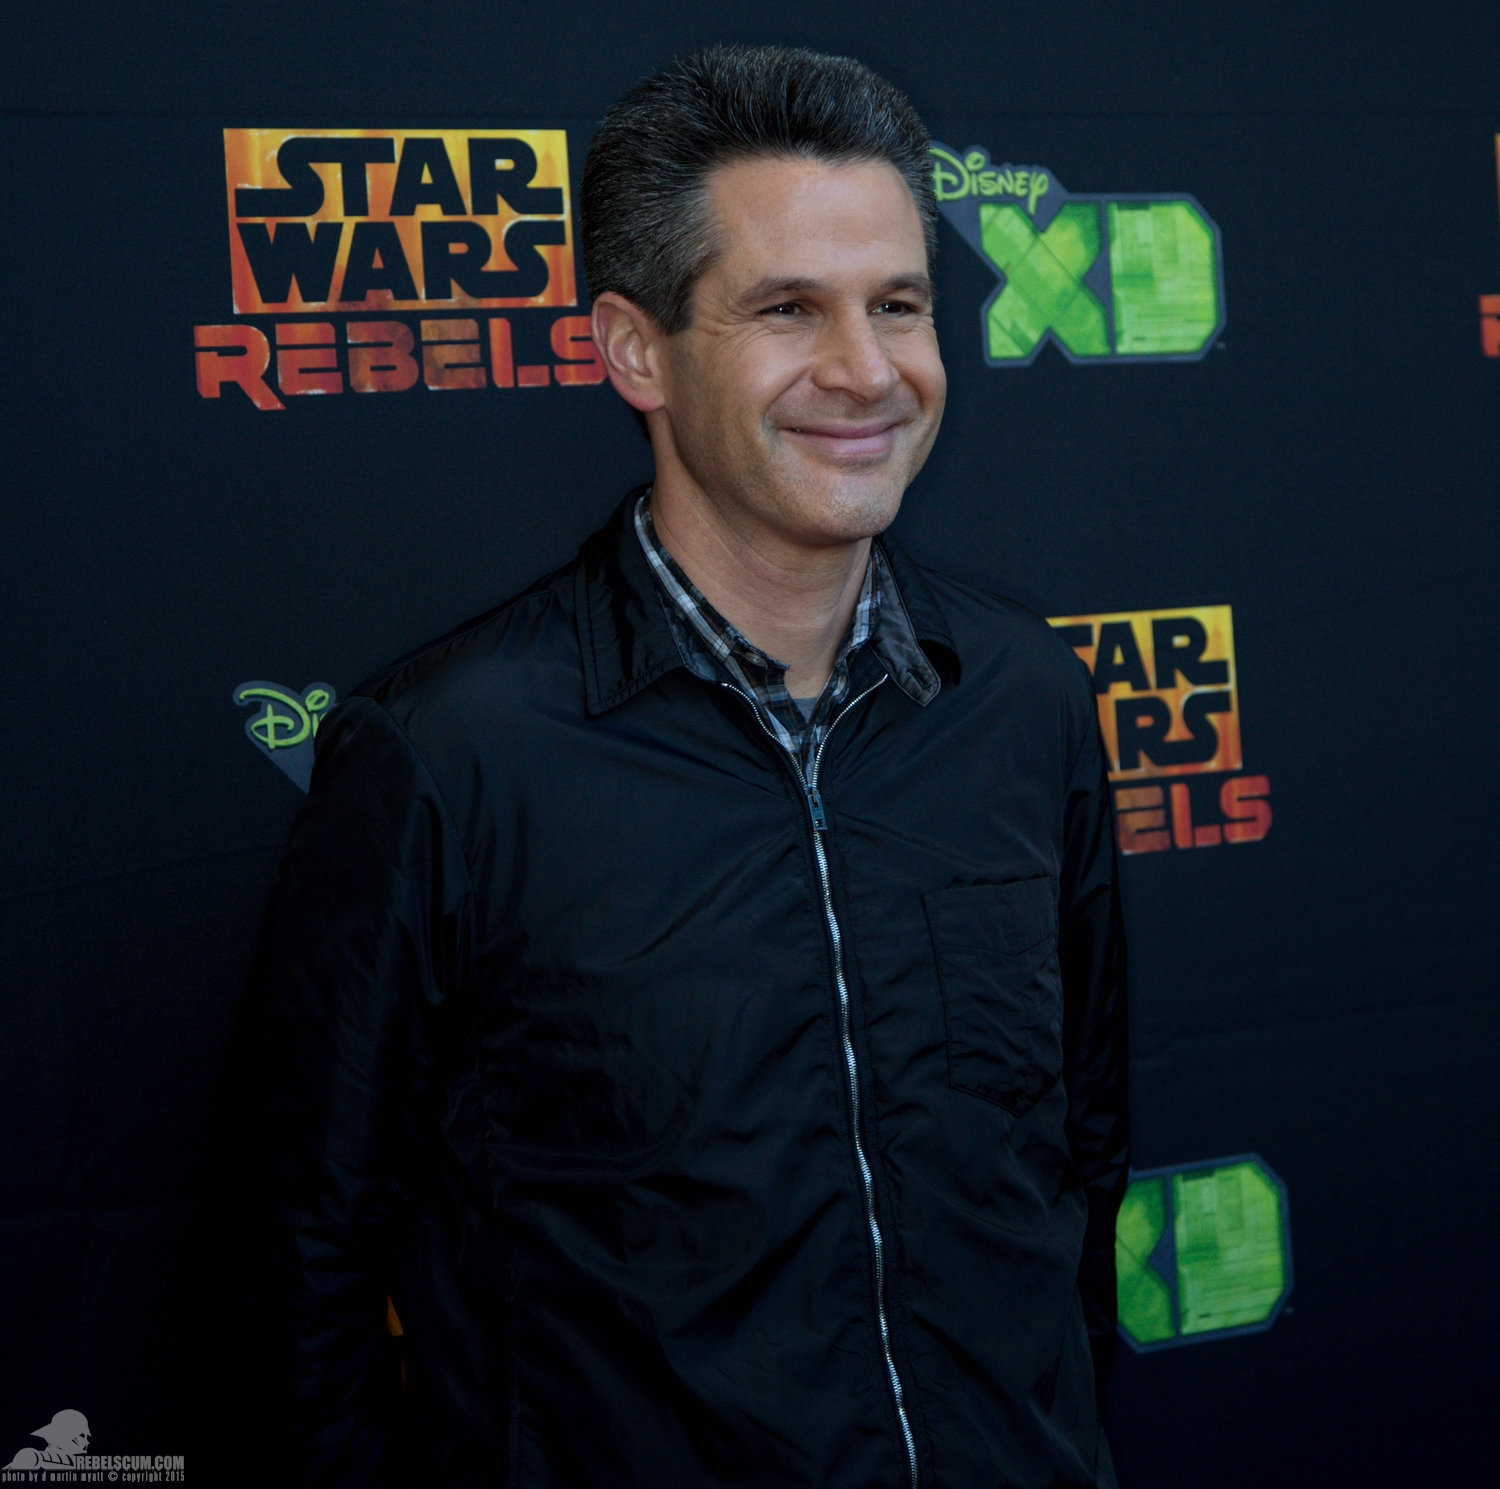 Star-Wars-Celebration-Anaheim-2015-Rebels-Red-Carpet-013.jpg